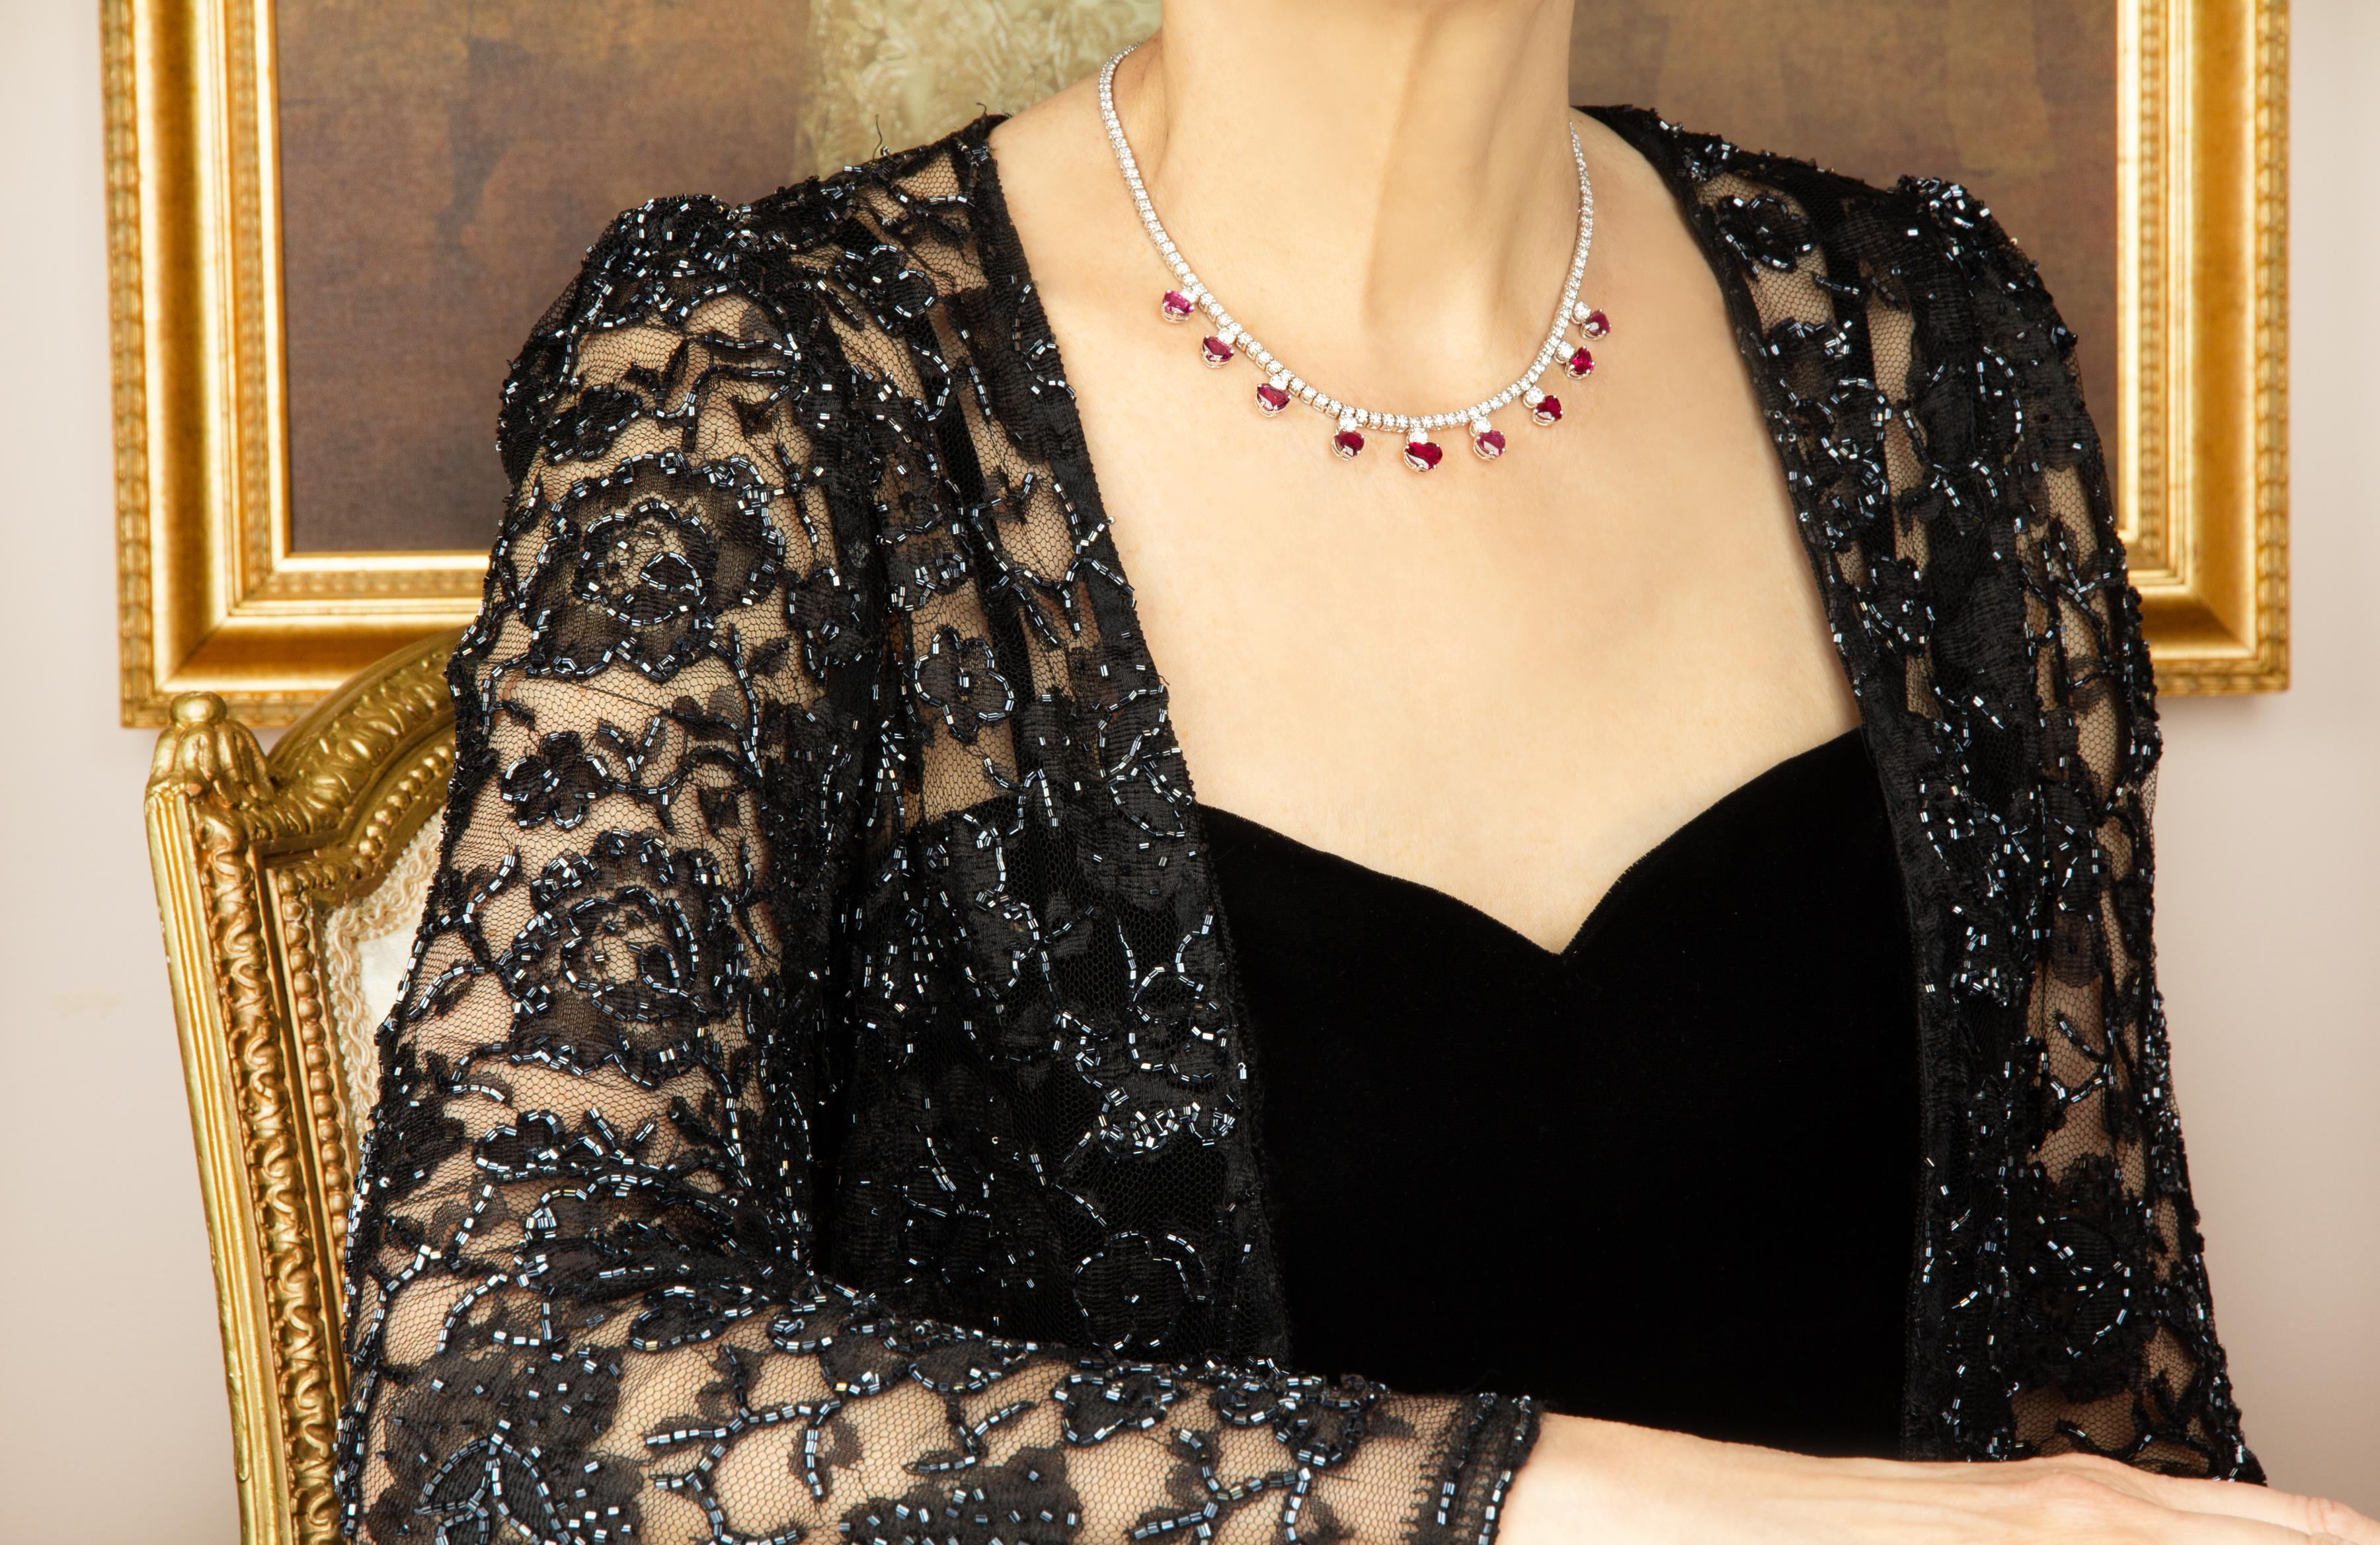 Die Diamant-Rubin-Riviera-Halskette zeichnet sich durch eine wunderbar gegliederte 15,5-Zoll-Riviera aus perfekt kalibrierten und homogenen runden Diamanten aus, an der 9 Diamanten mit einem Gewicht von jeweils 0,20 Karat aufgehängt sind, insgesamt